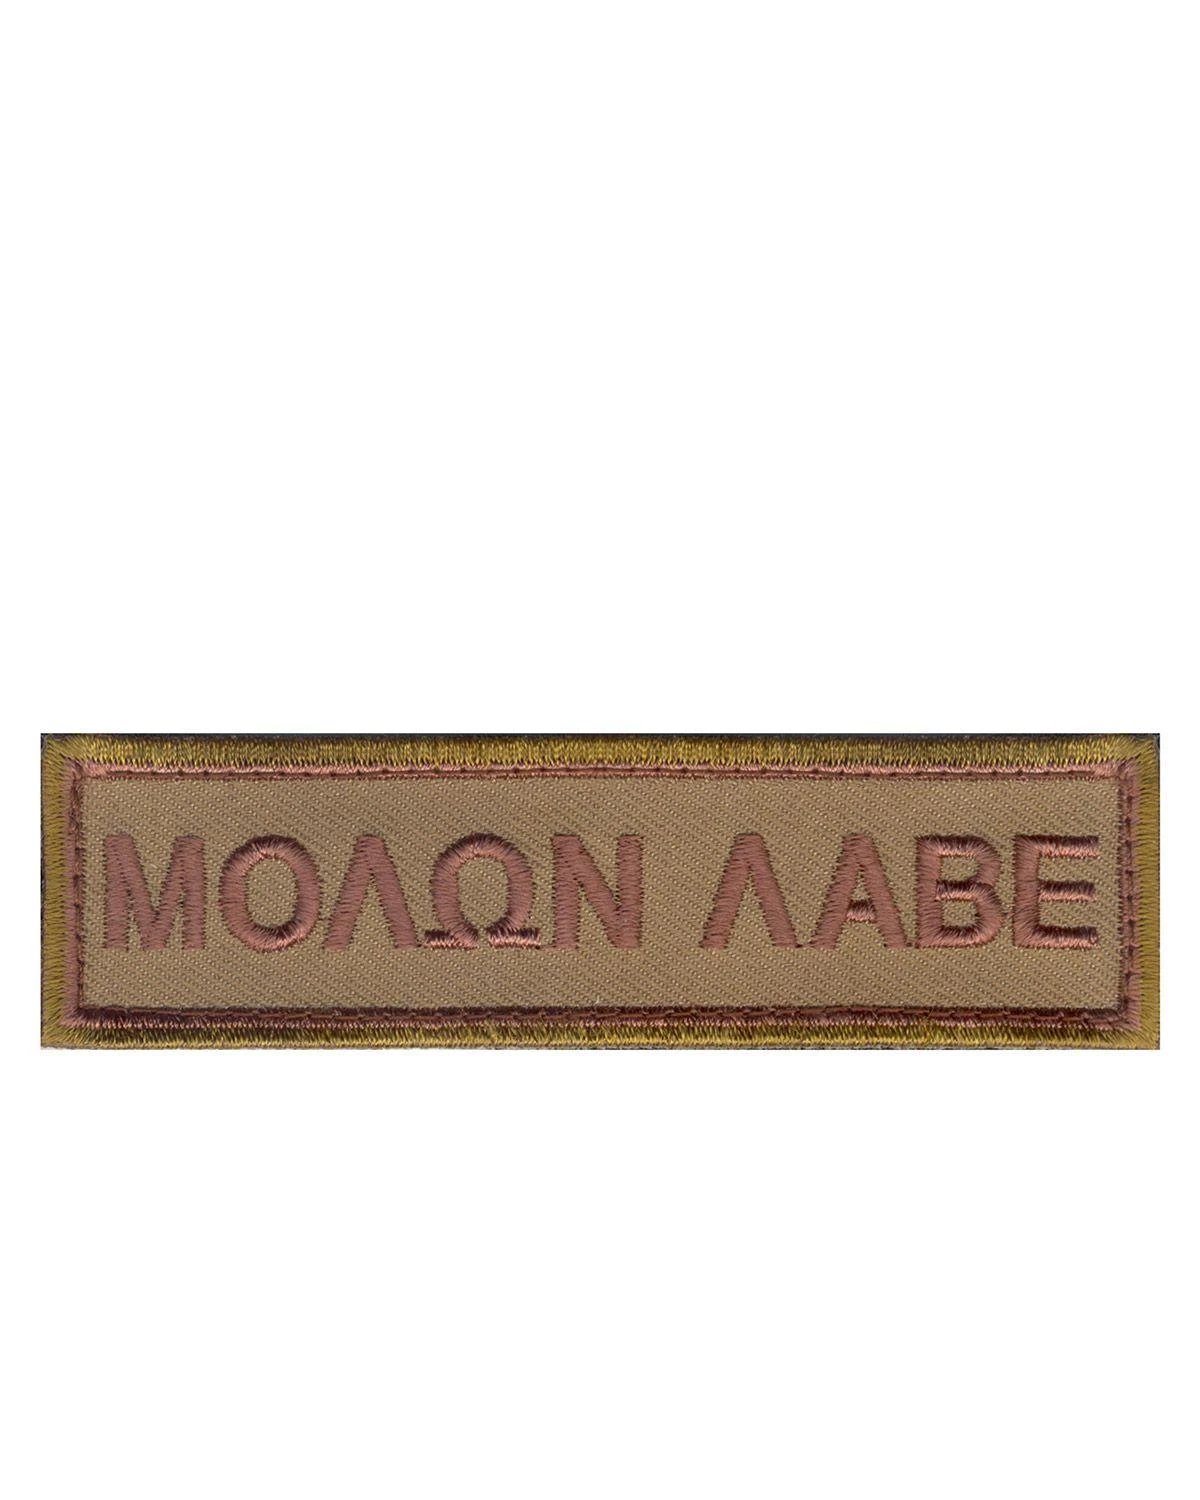 Morale Patch - Molon Labe